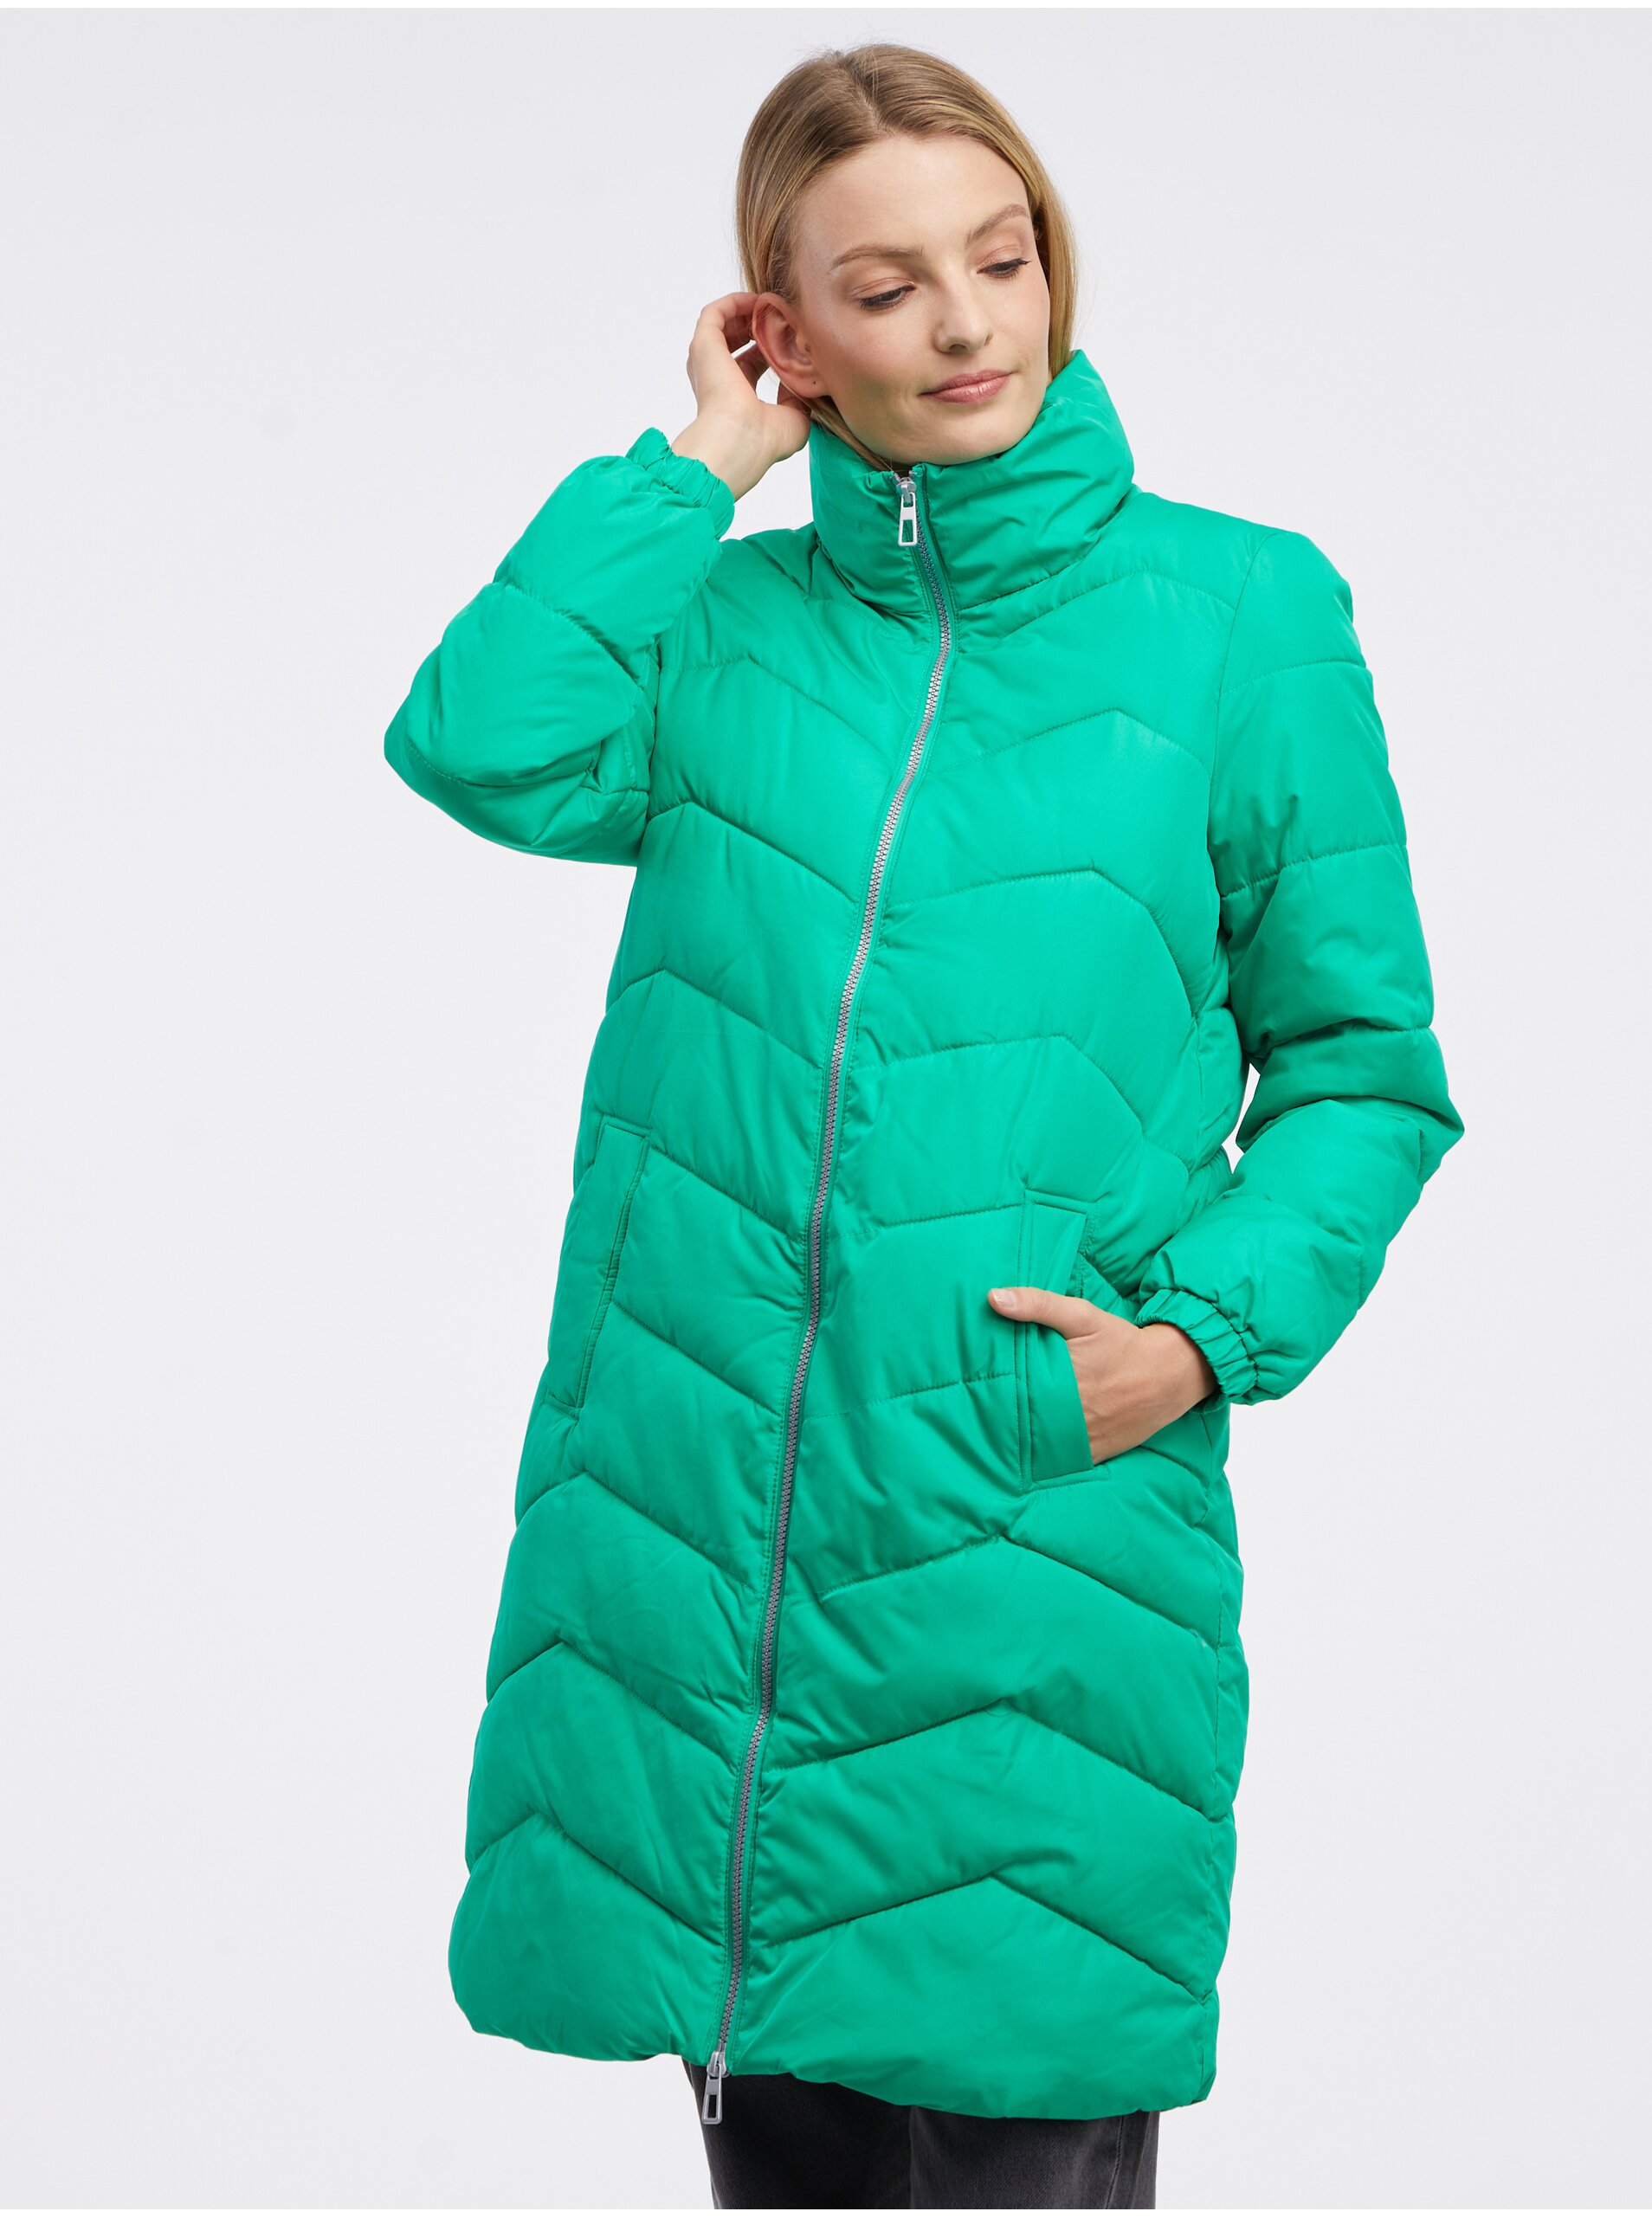 Lacno Zelený dámsky zimný prešívaný kabát VERO MODA Liga